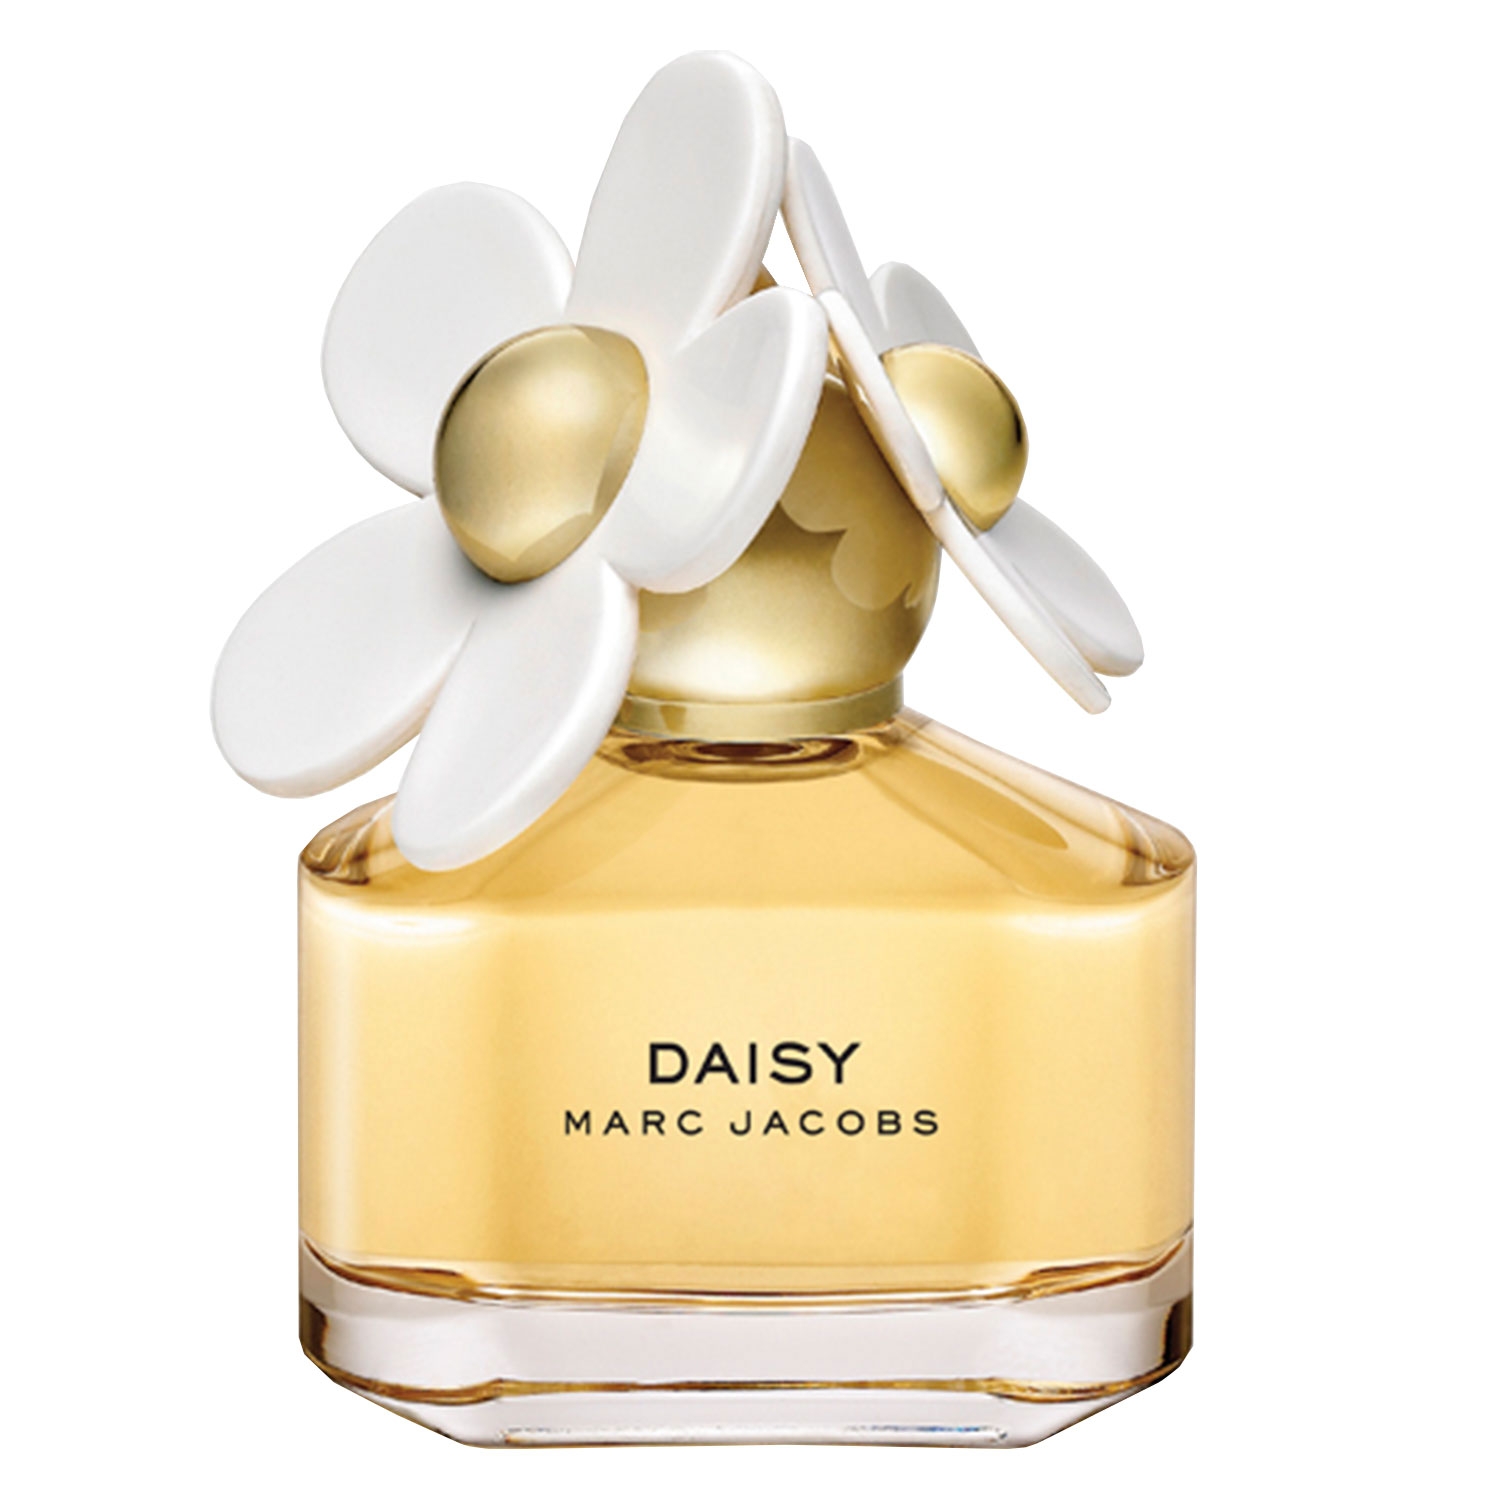 Product image from Marc Jacobs - Daisy Eau de Toilette